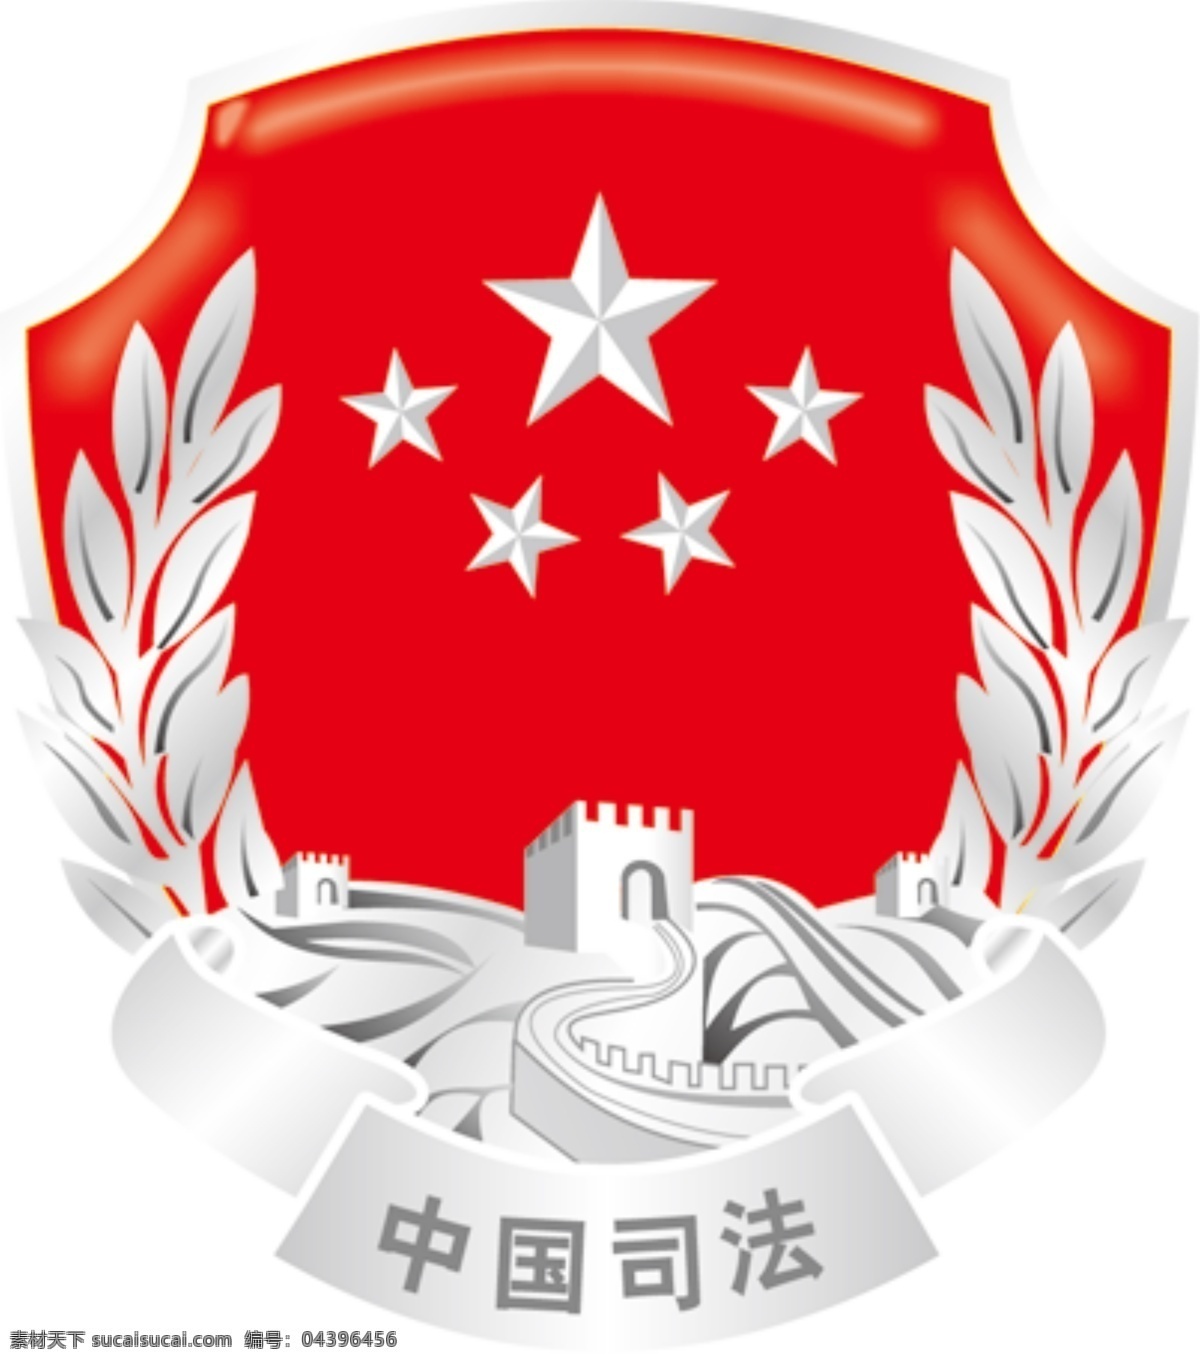 司法标志 司法局标志 司法局 logo 中国司法局 司法logo 标志logo 标志图标 公共标识标志 分层